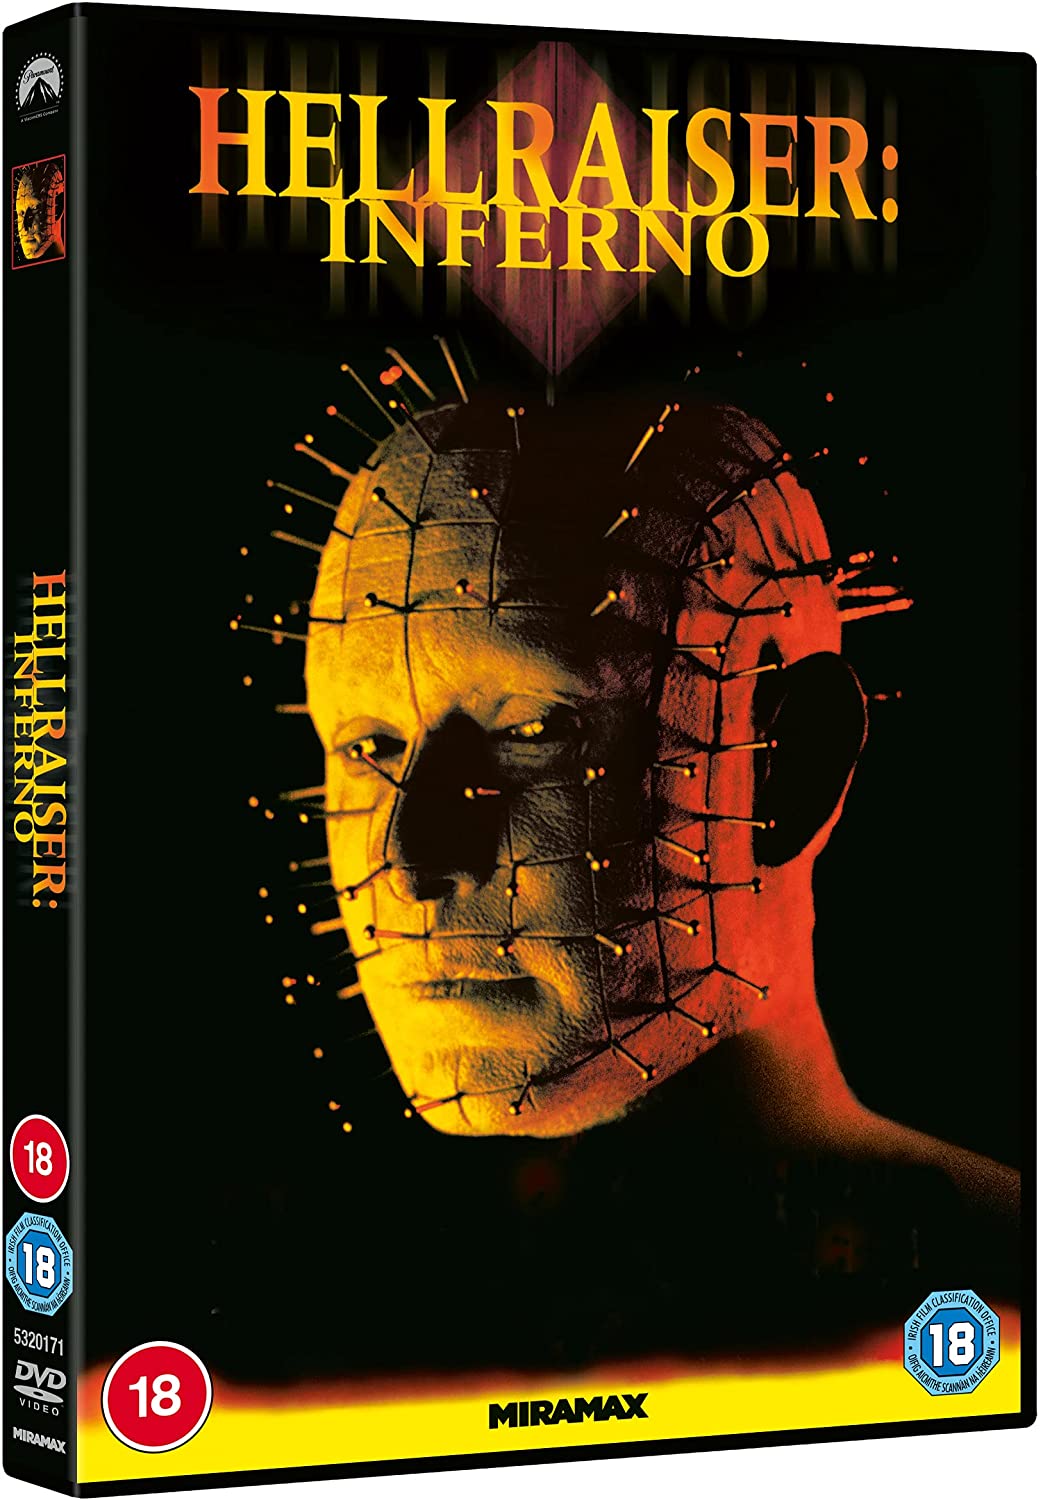 Hellraiser 5: Inferno - Horror [DVD]